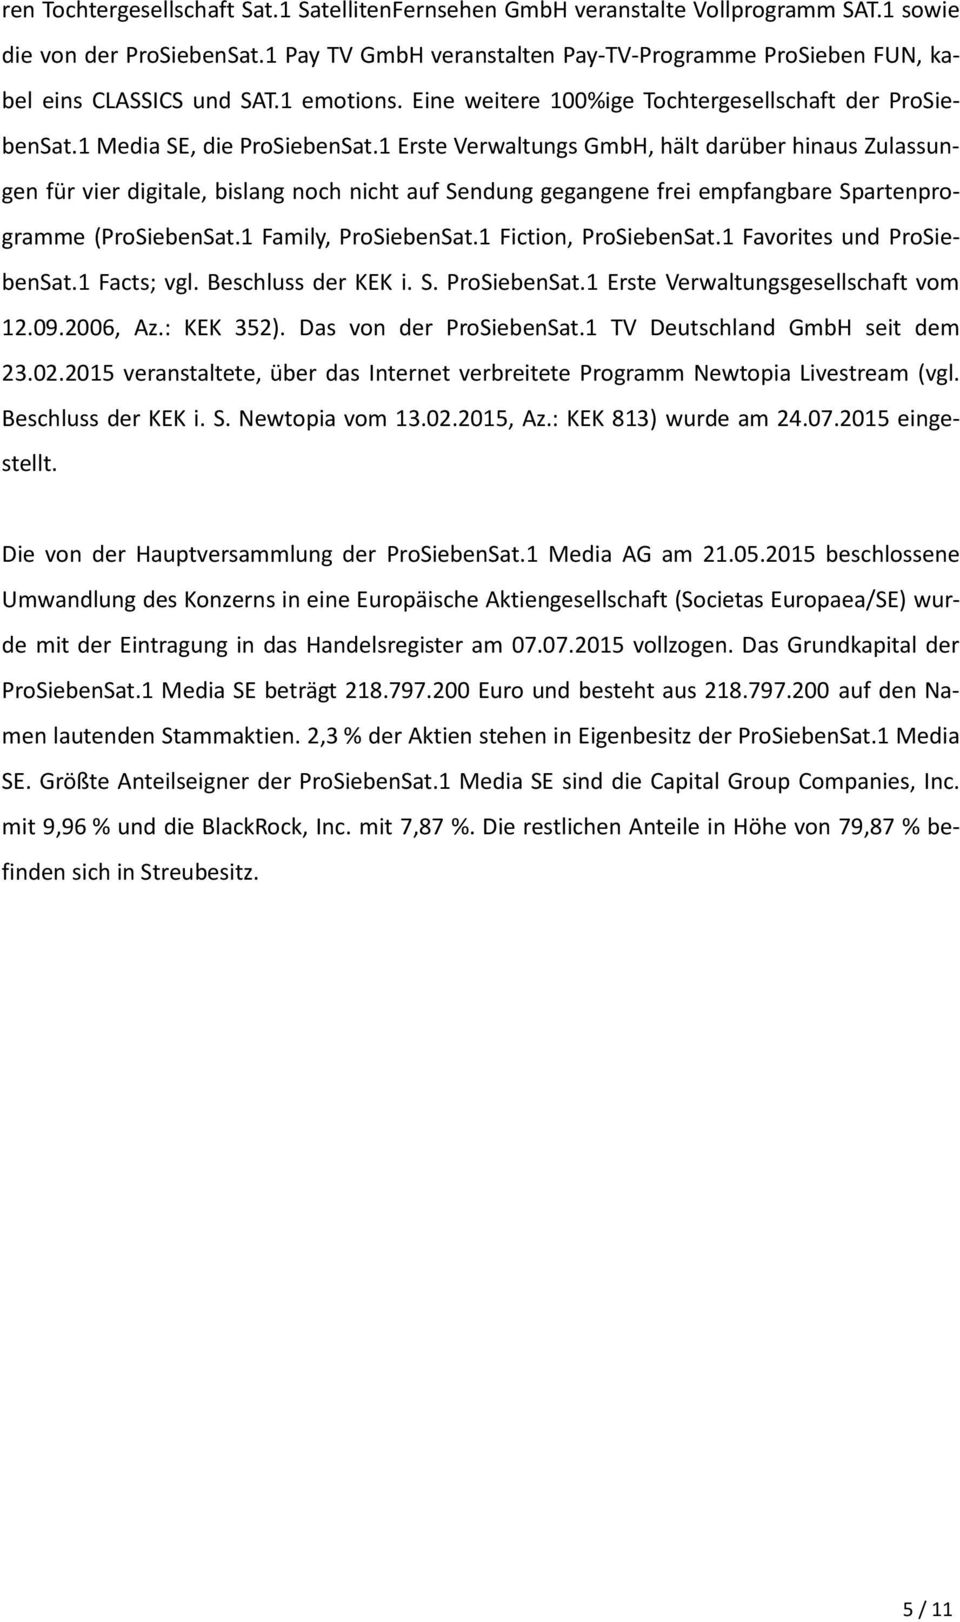 1 Erste Verwaltungs GmbH, hält darüber hinaus Zulassungen für vier digitale, bislang noch nicht auf Sendung gegangene frei empfangbare Spartenprogramme (ProSiebenSat.1 Family, ProSiebenSat.